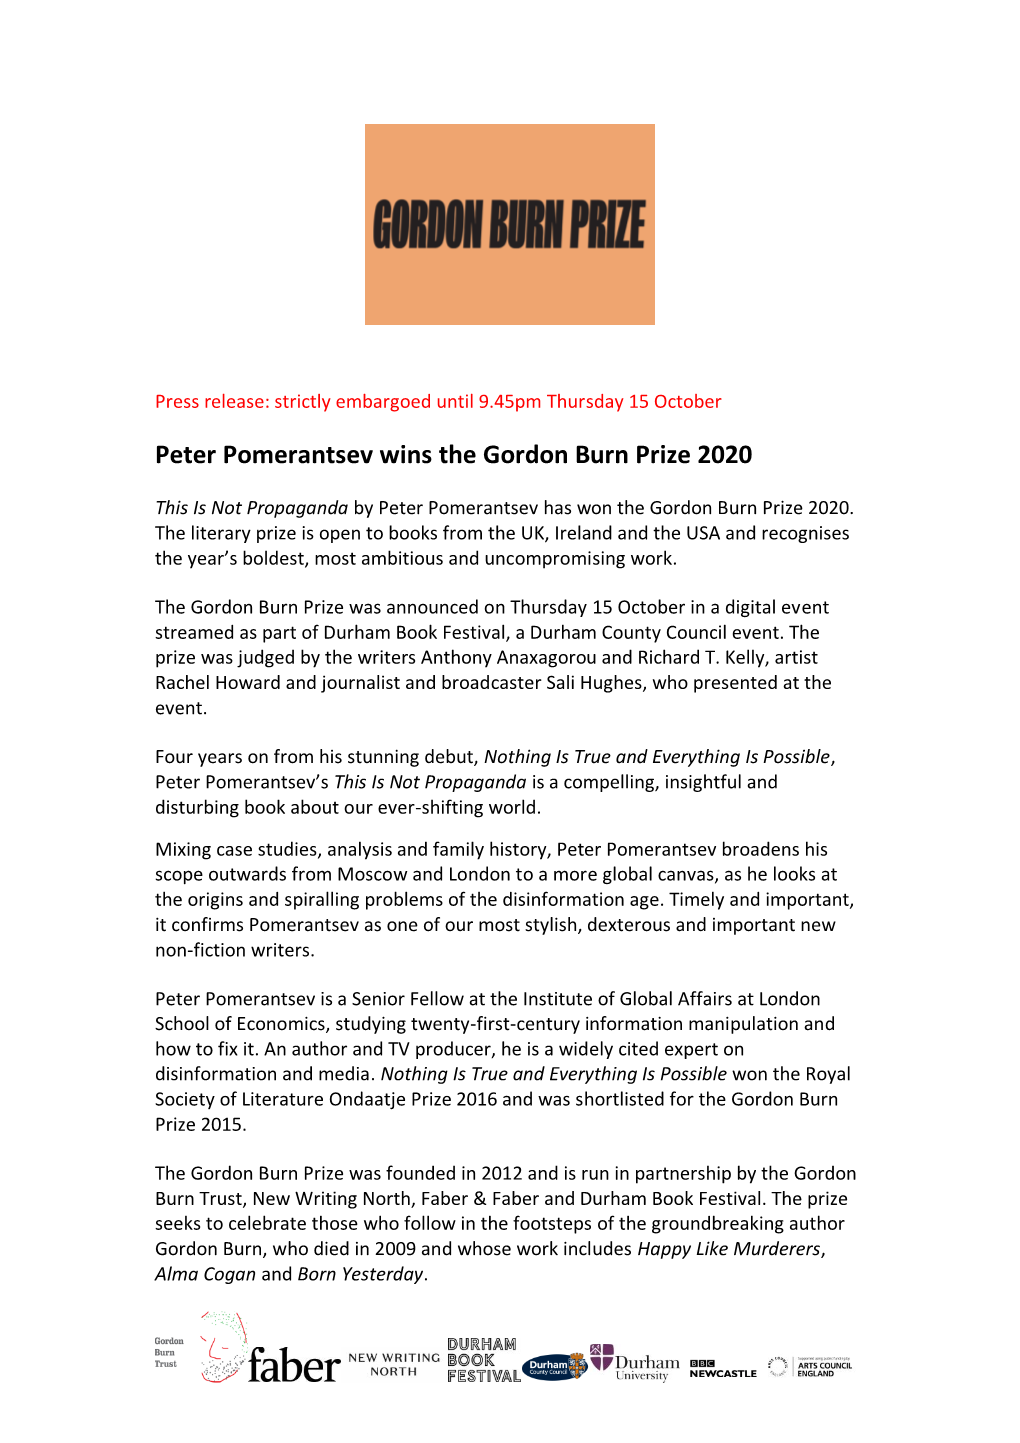 Peter Pomerantsev Wins the Gordon Burn Prize 2020